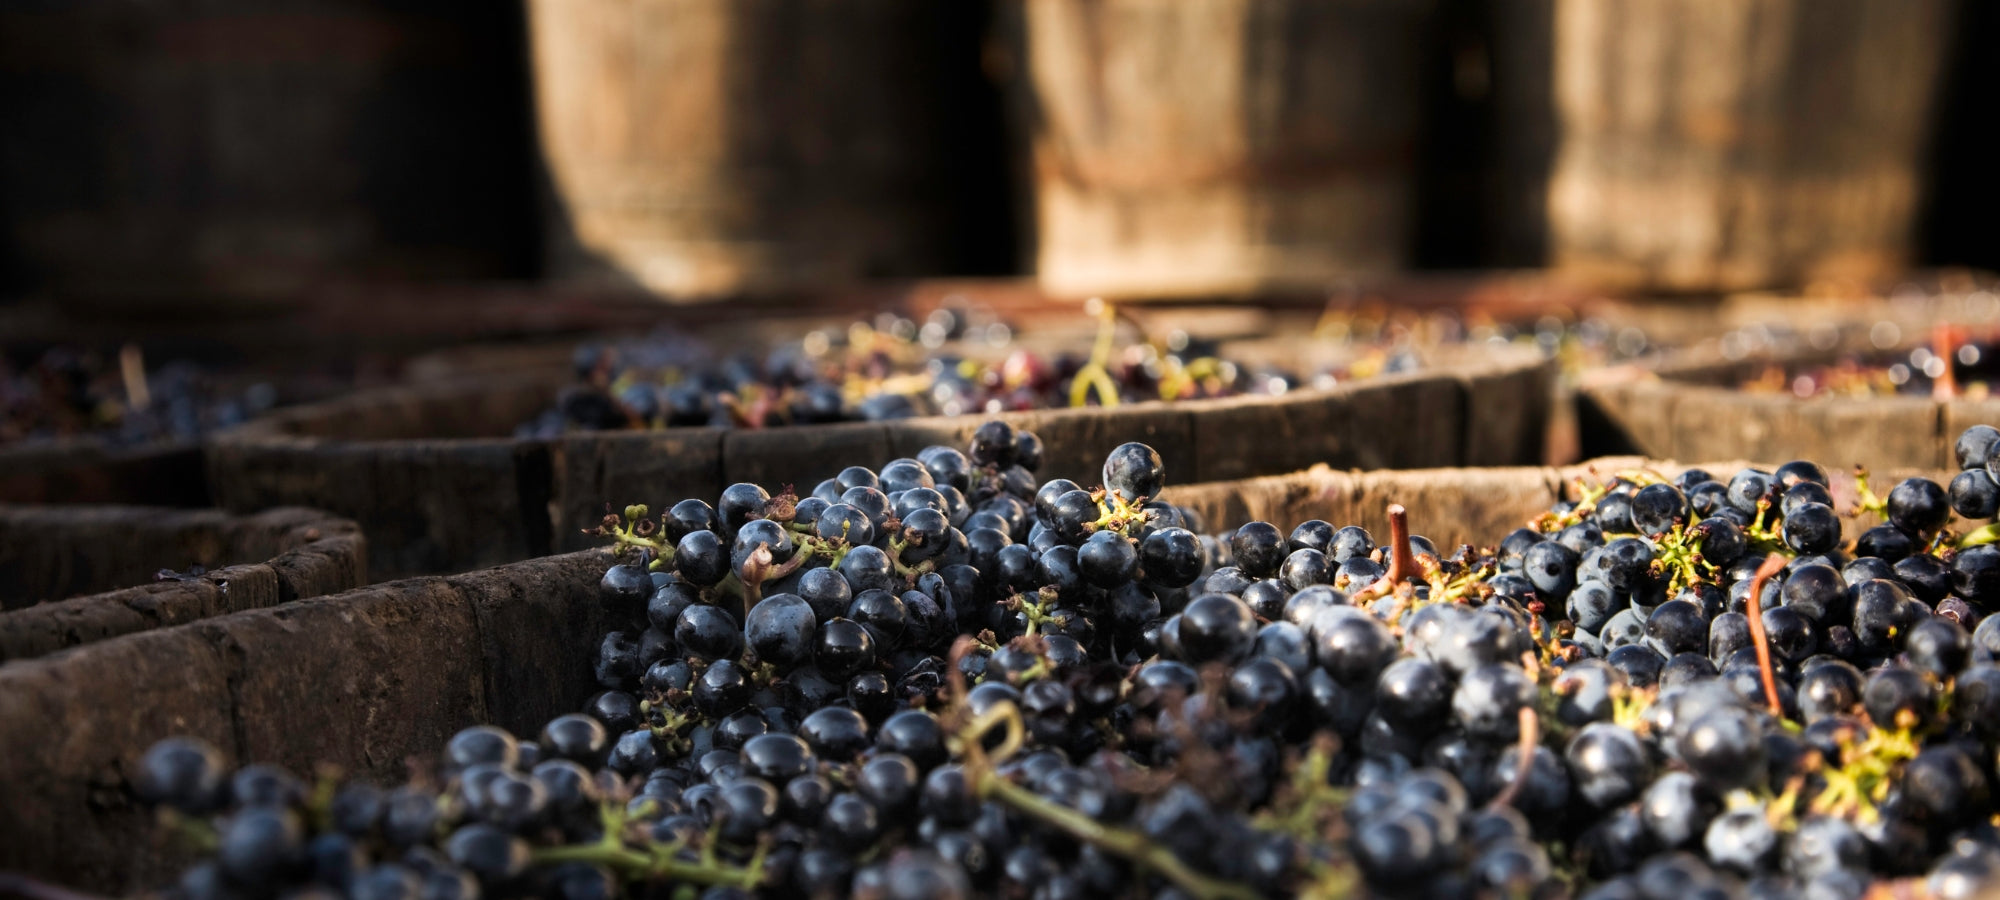 Bild von frischen Trauben in einem Behälter während des Weinherstellungsprozesses.